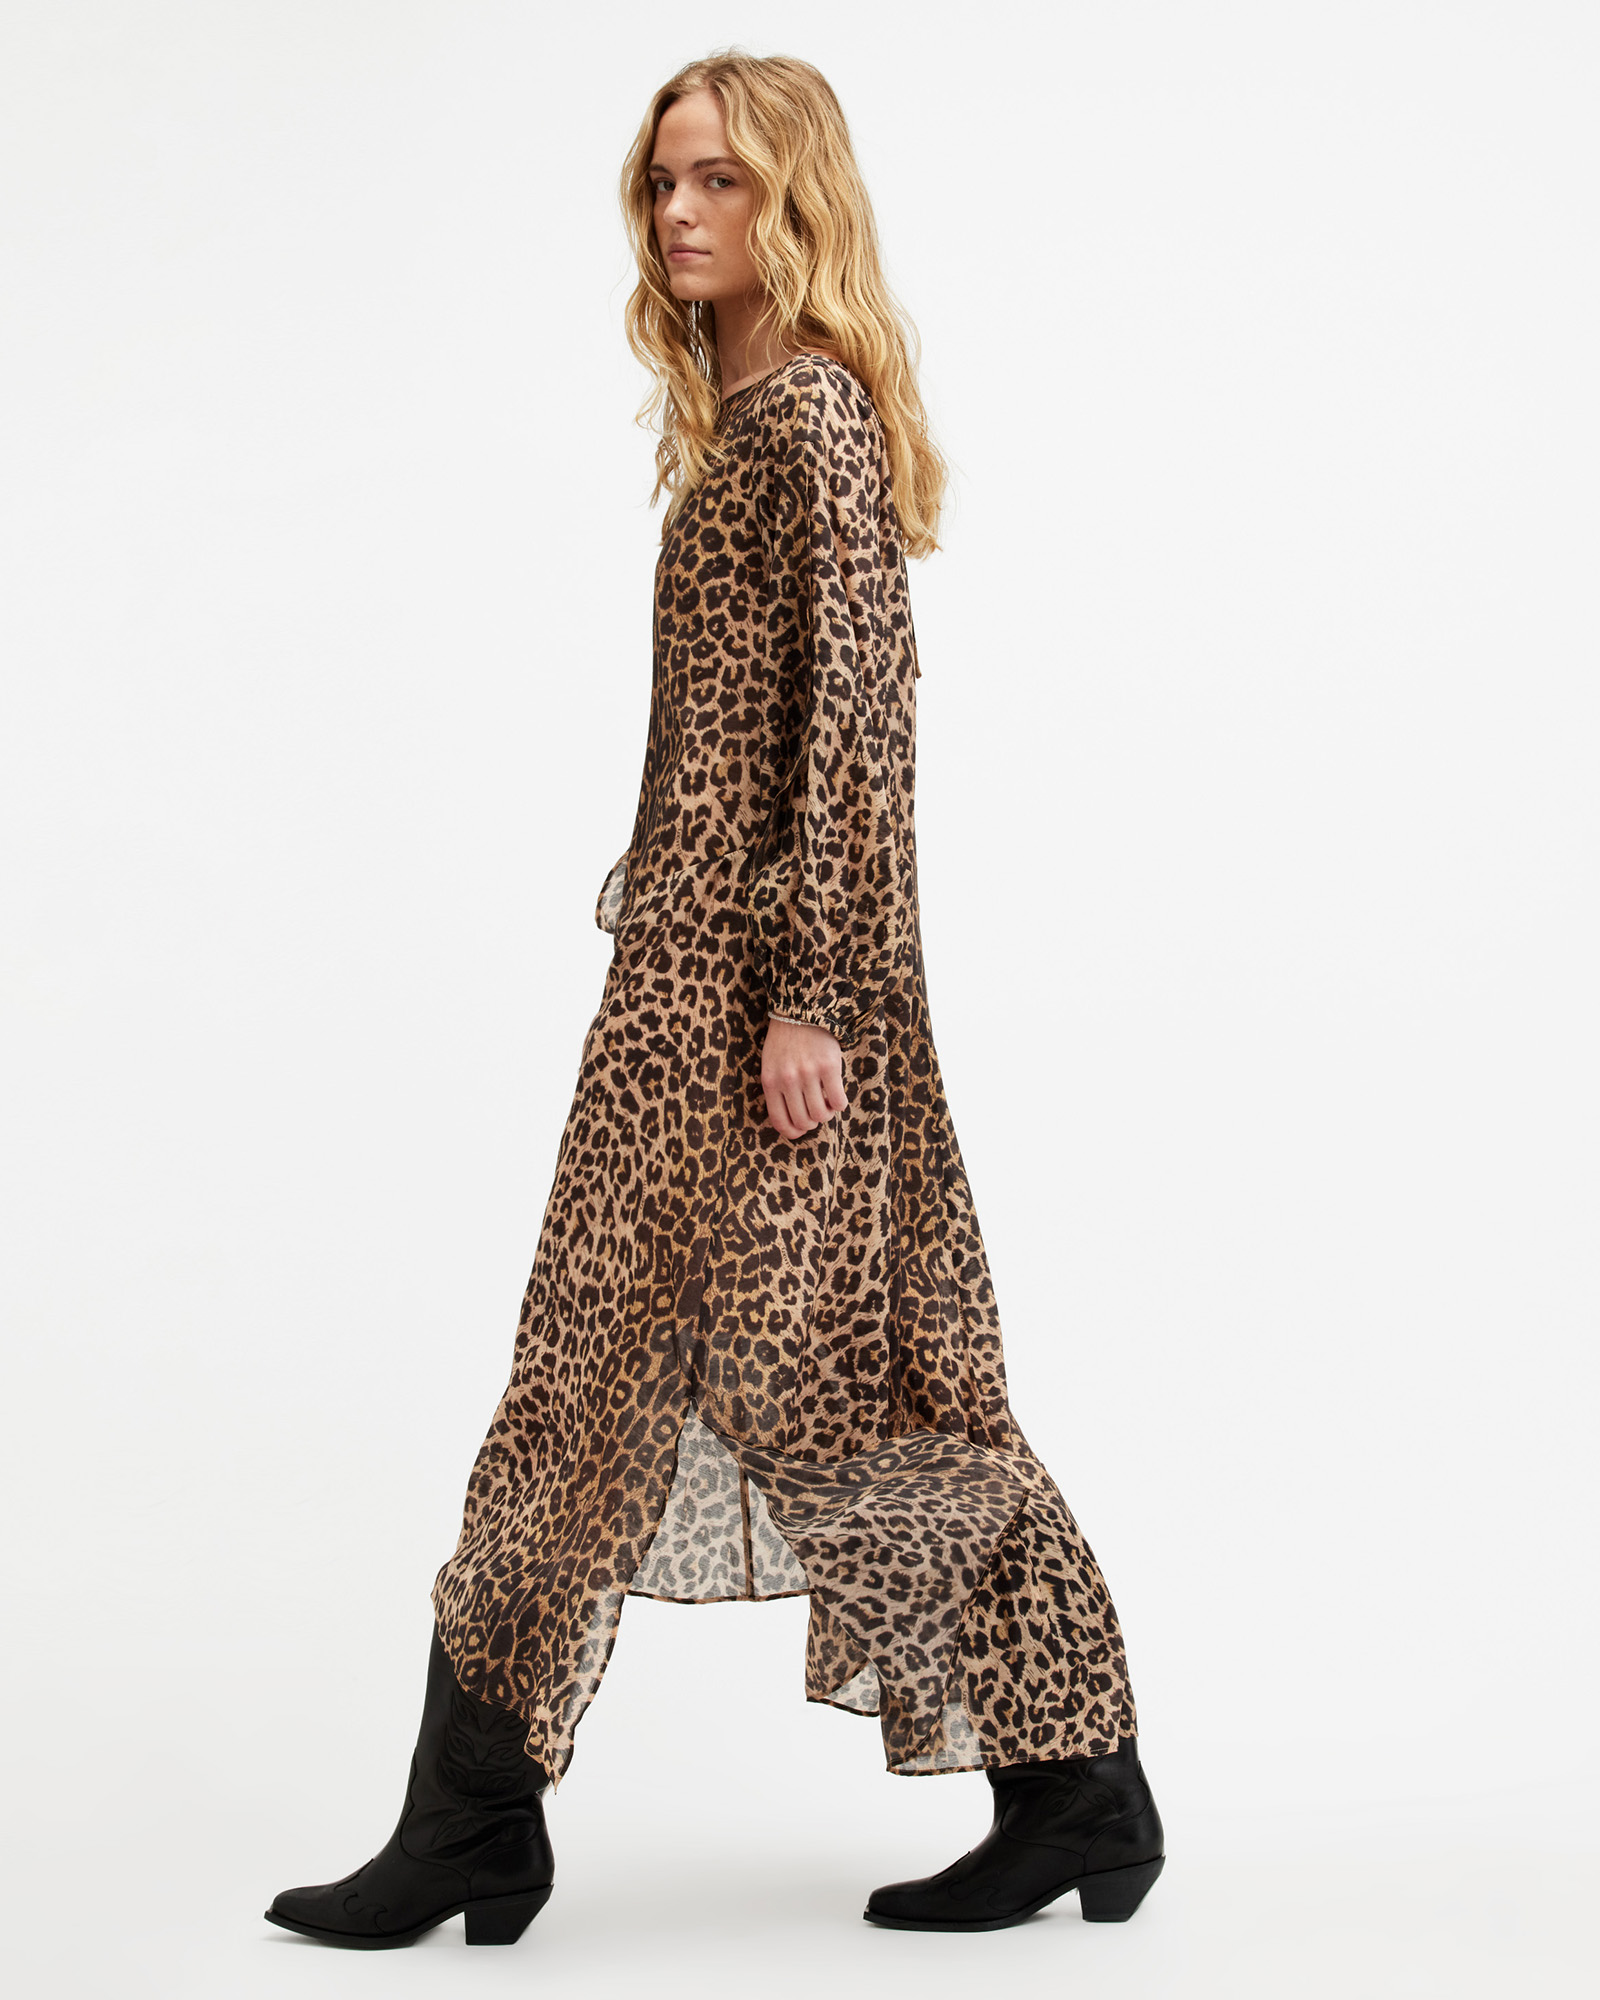 AllSaints Jane Leopard Print Maxi Cover Up Dress